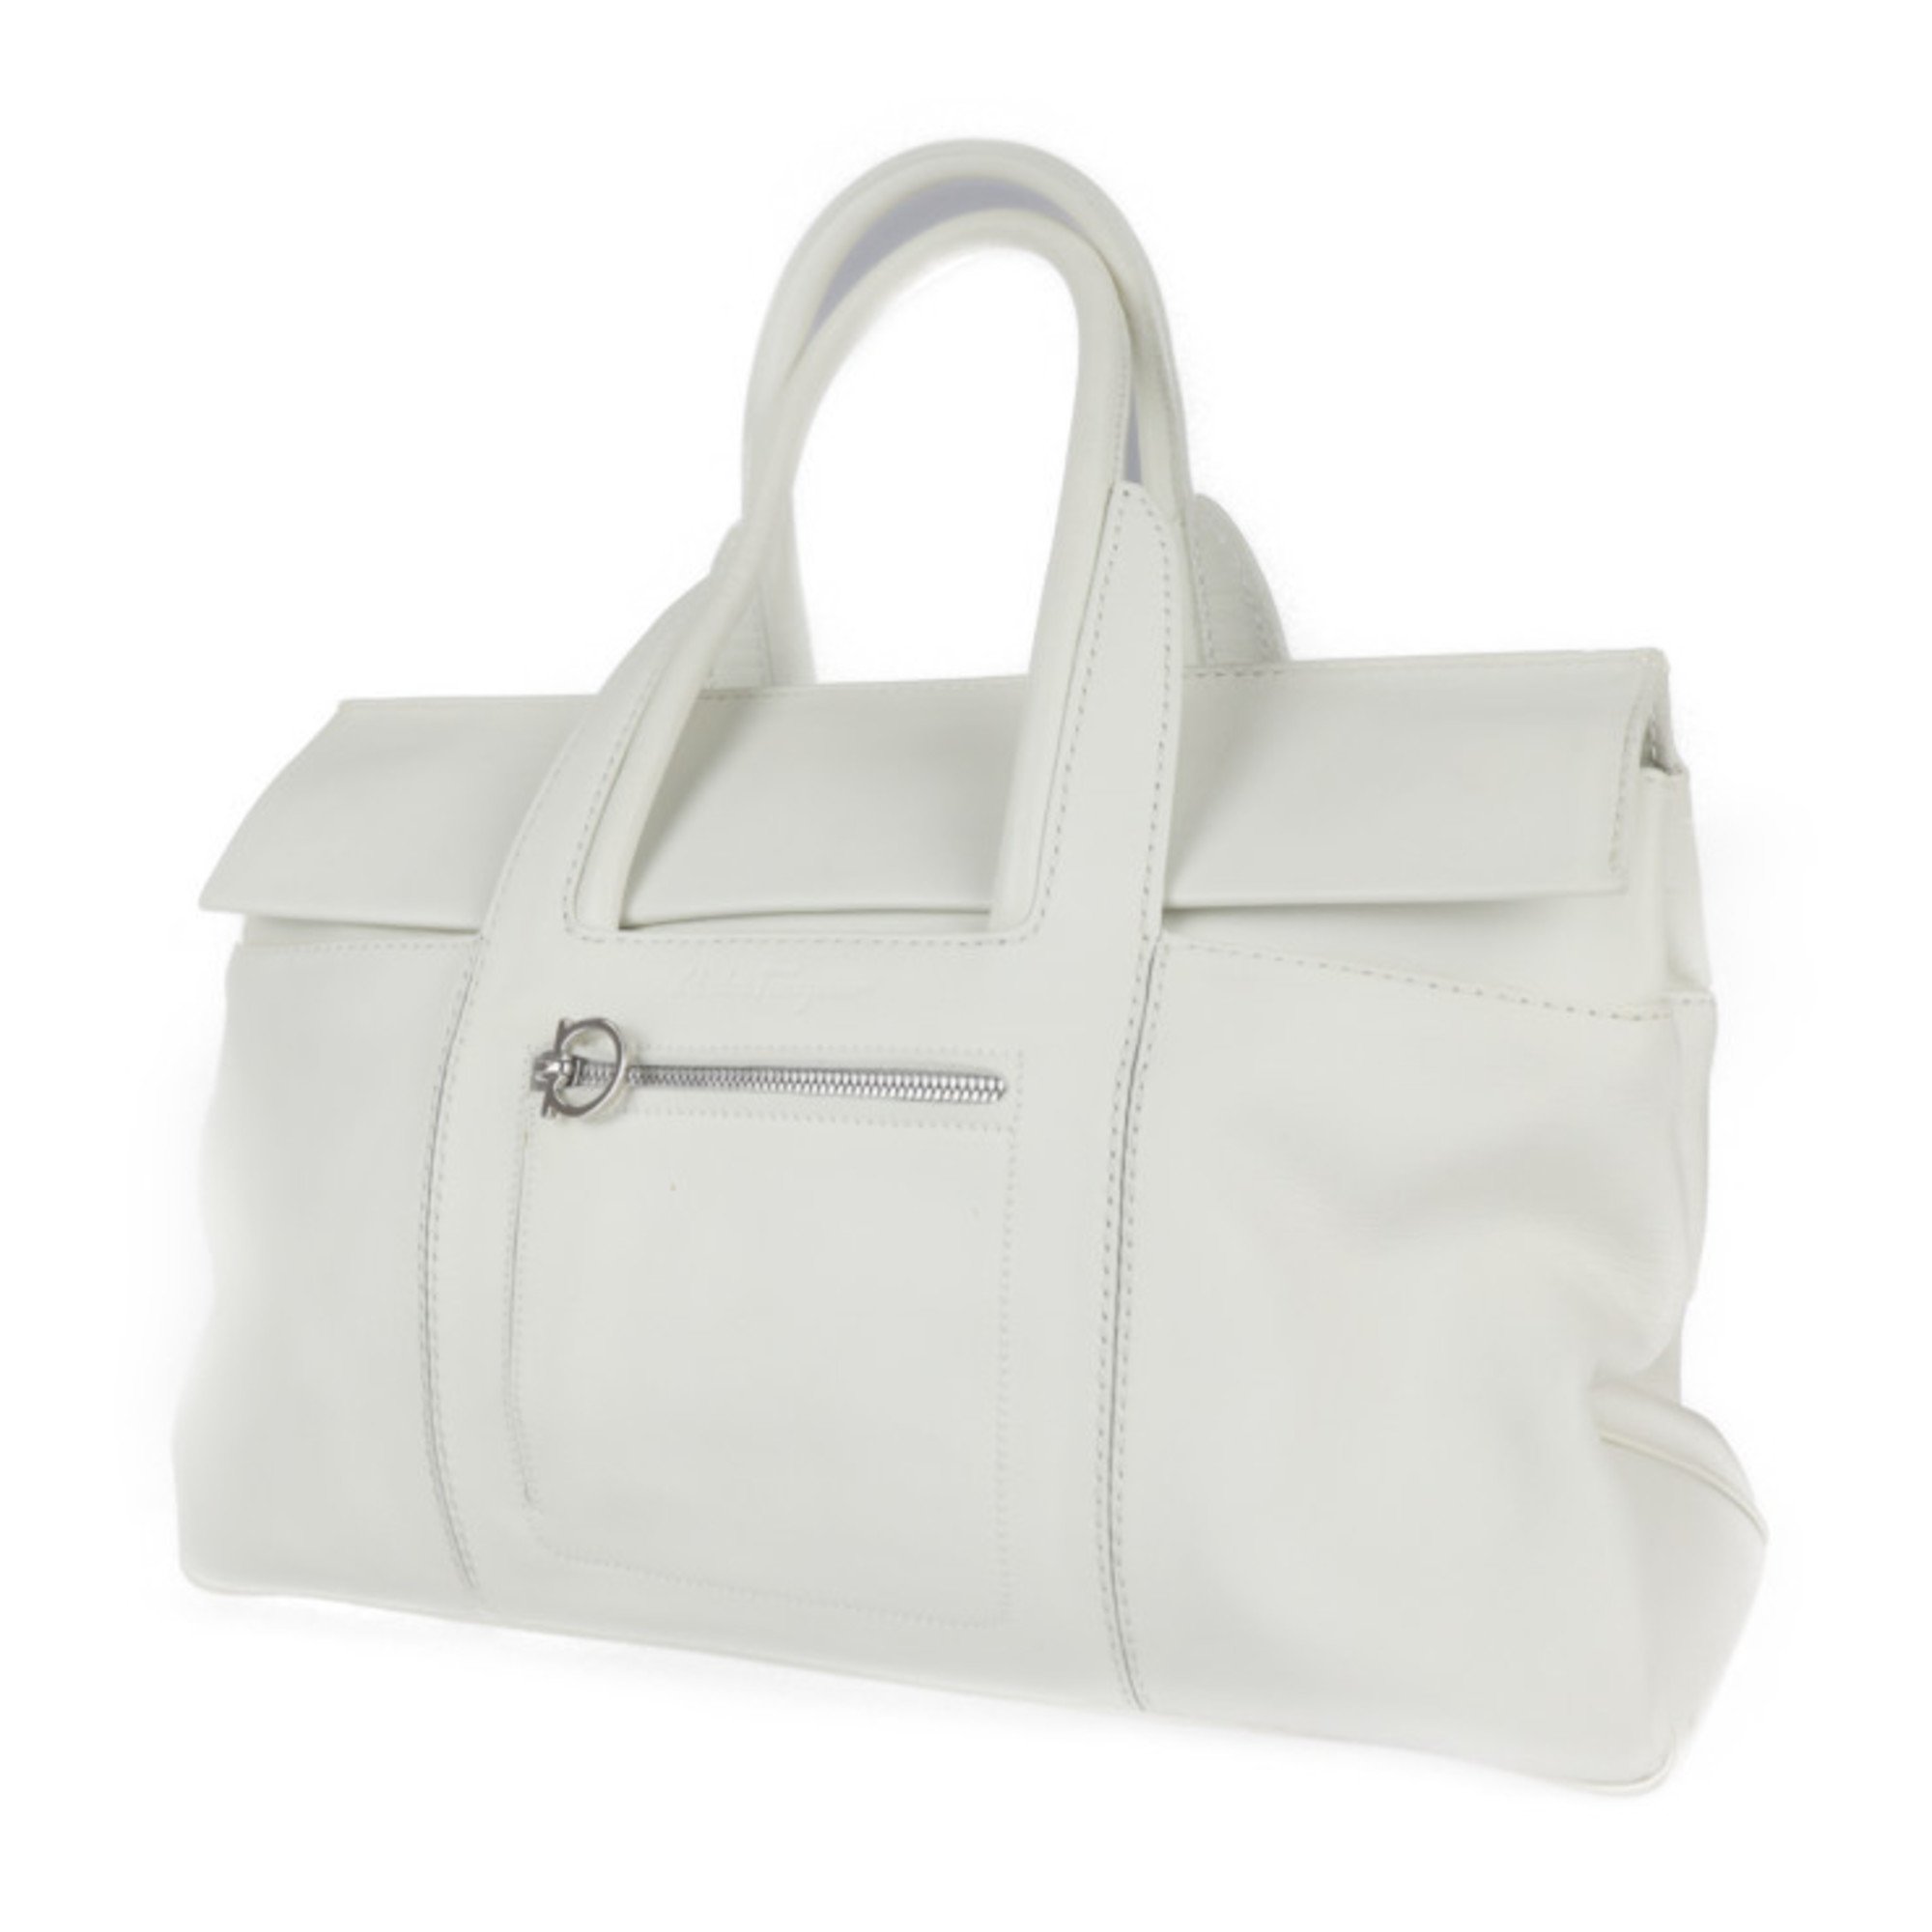 Salvatore Ferragamo Gancini tote bag 21 5312 calf leather BIANCO white silver hardware handbag